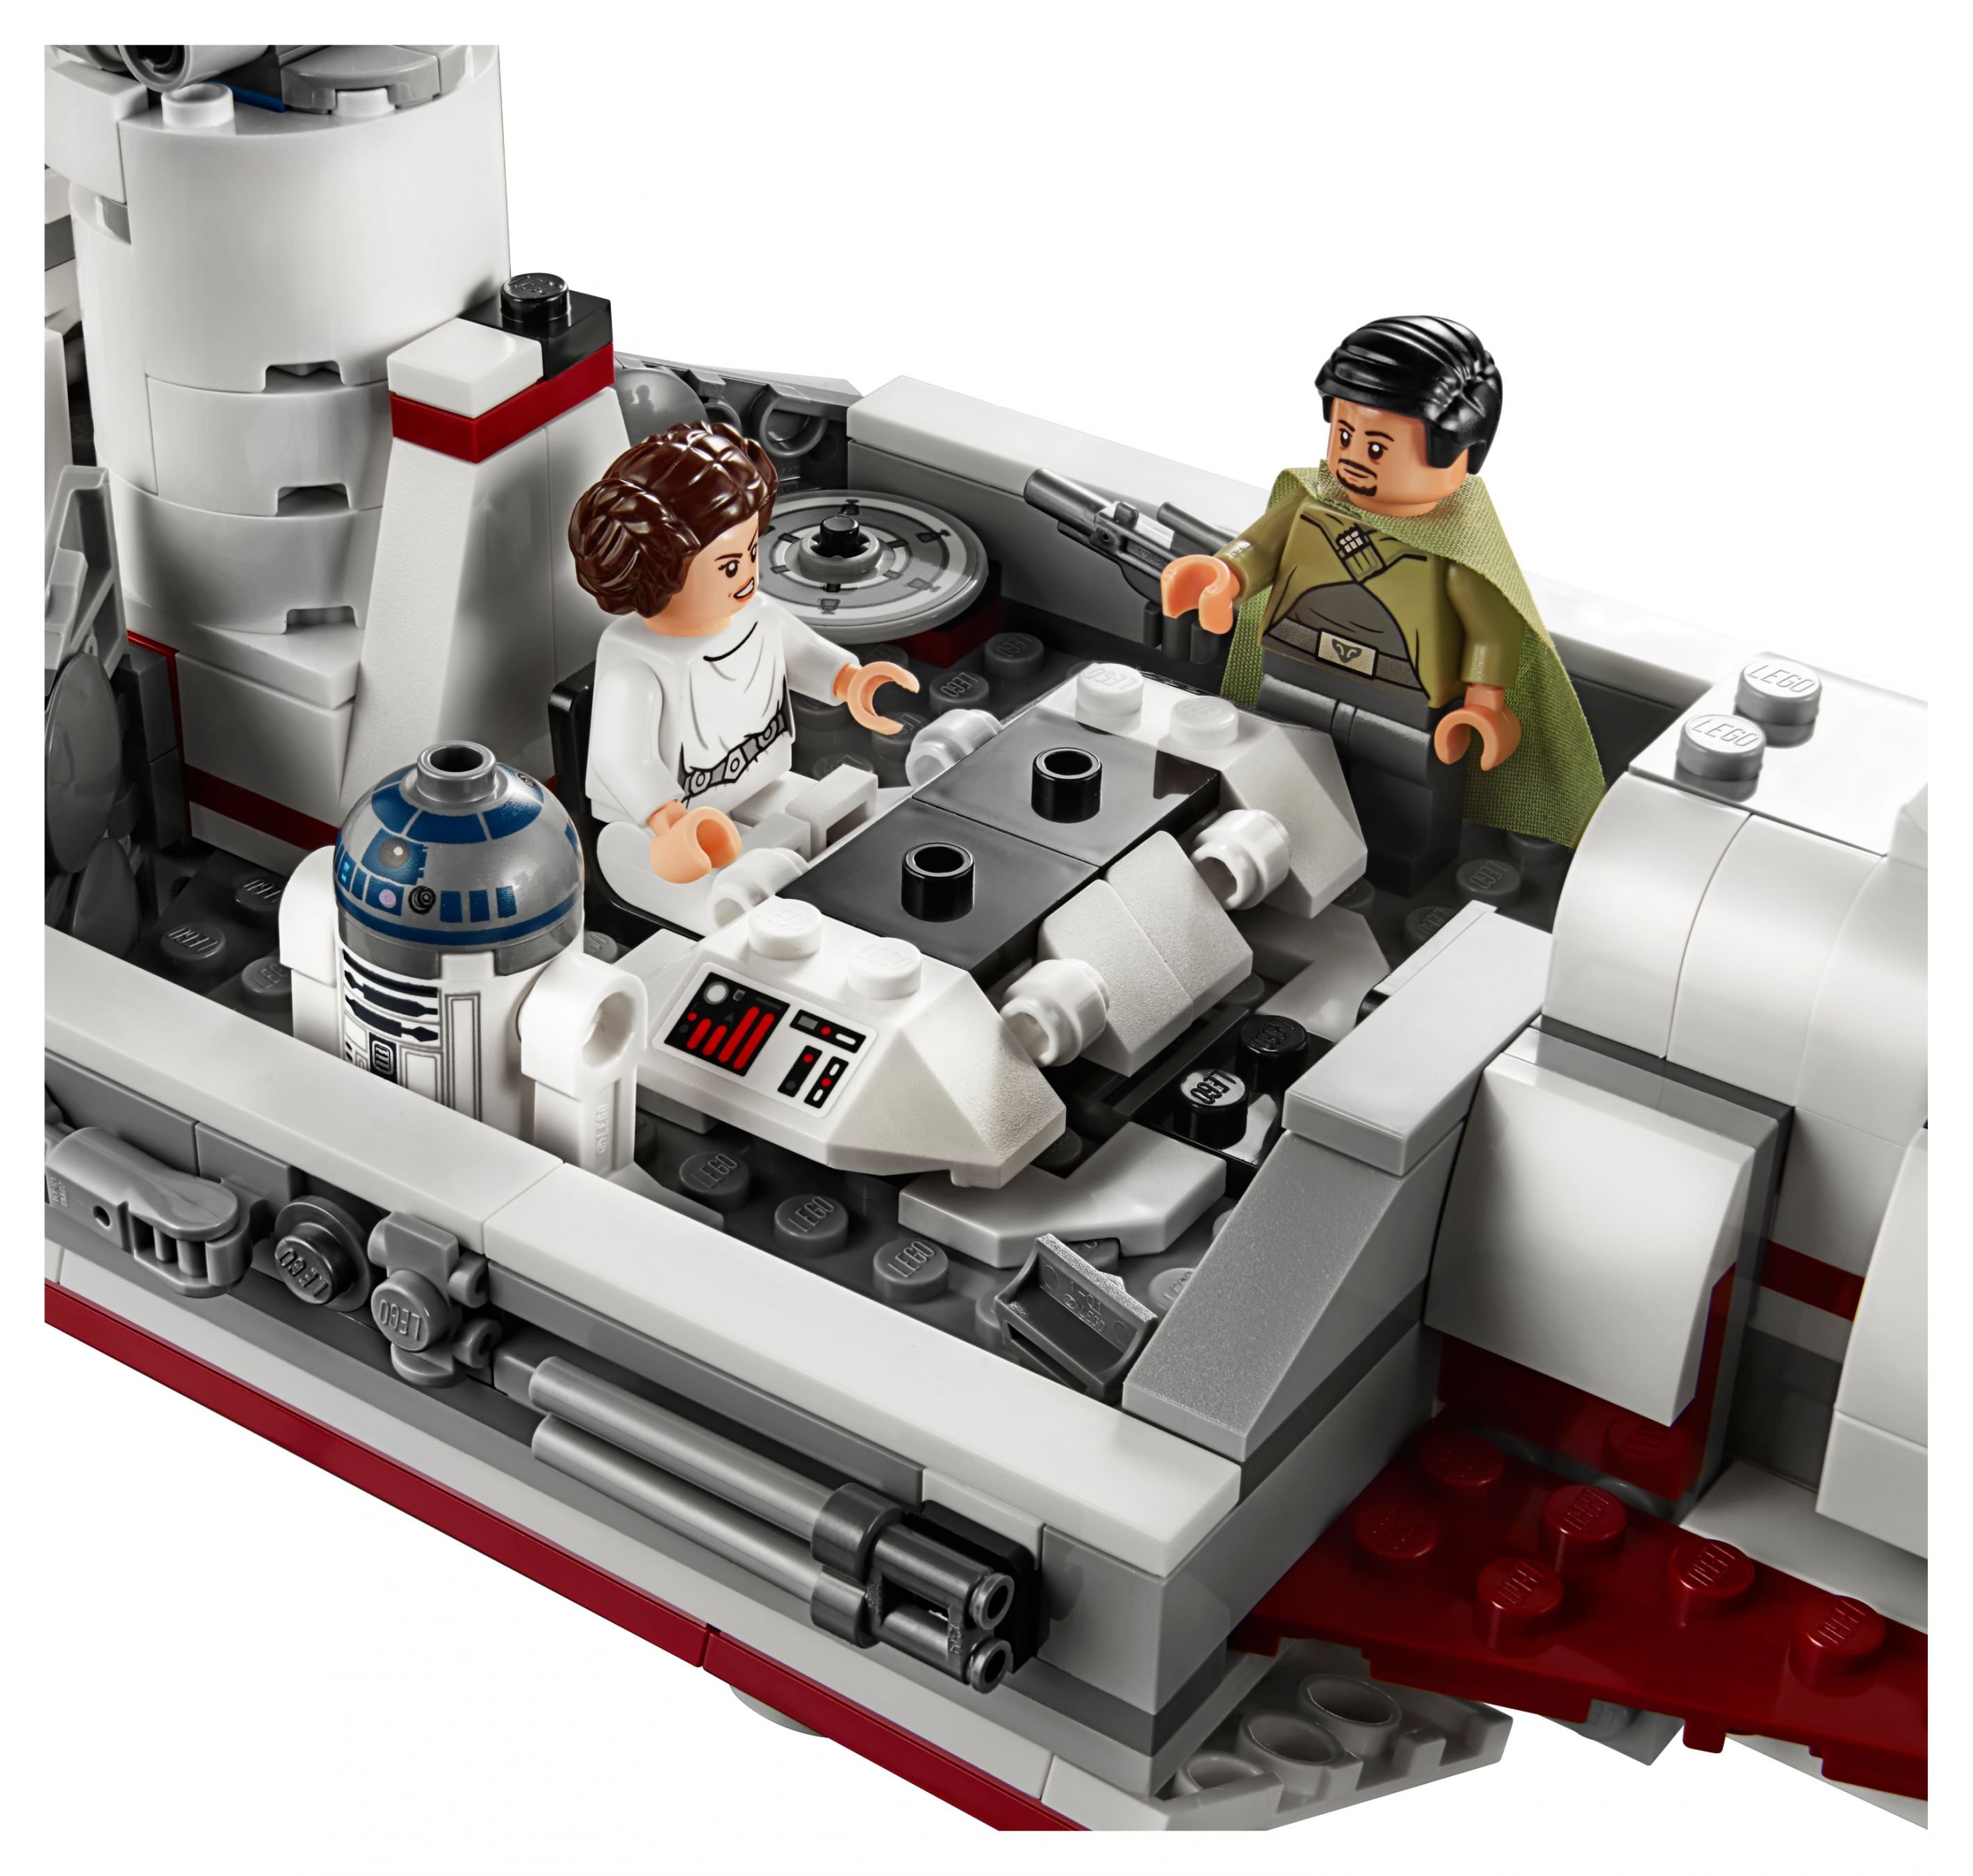 LEGO Star Wars 75244 Tantive IV LEGO_75244_alt4.jpg